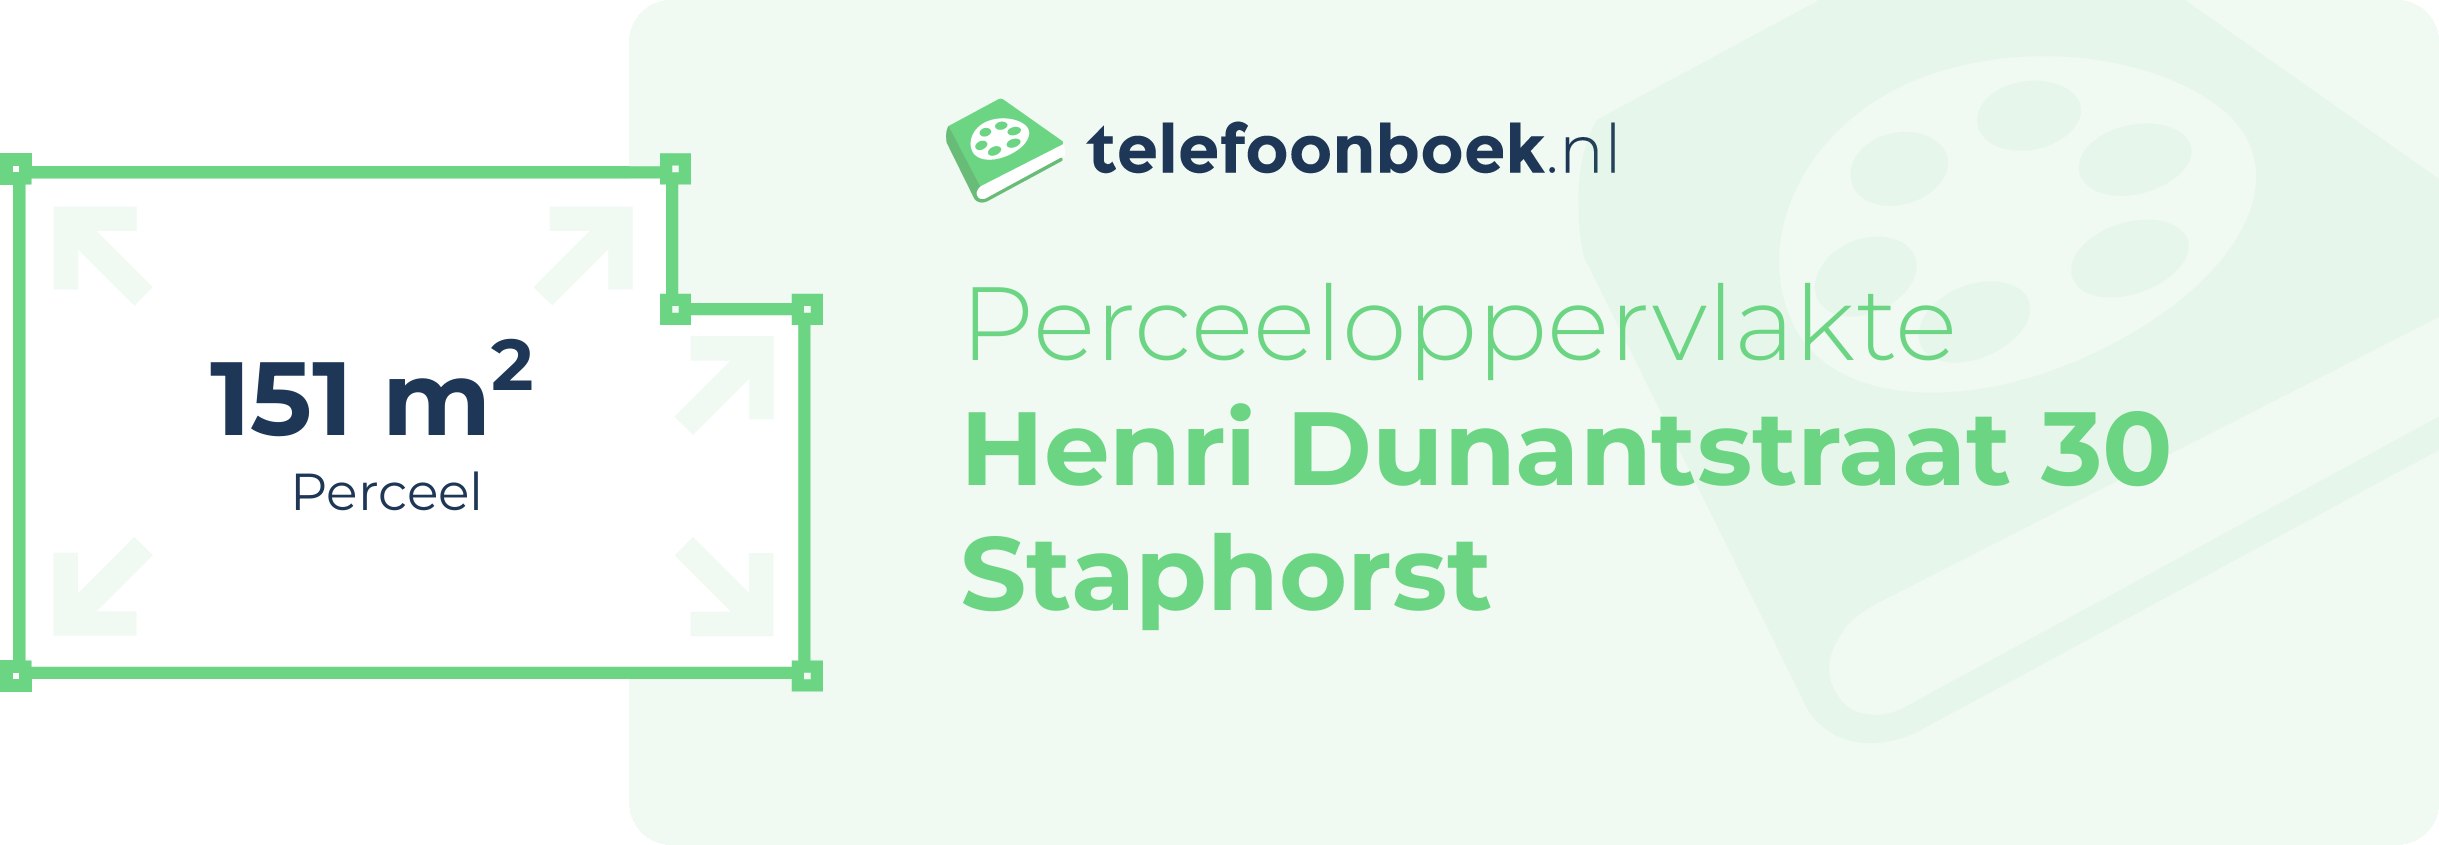 Perceeloppervlakte Henri Dunantstraat 30 Staphorst